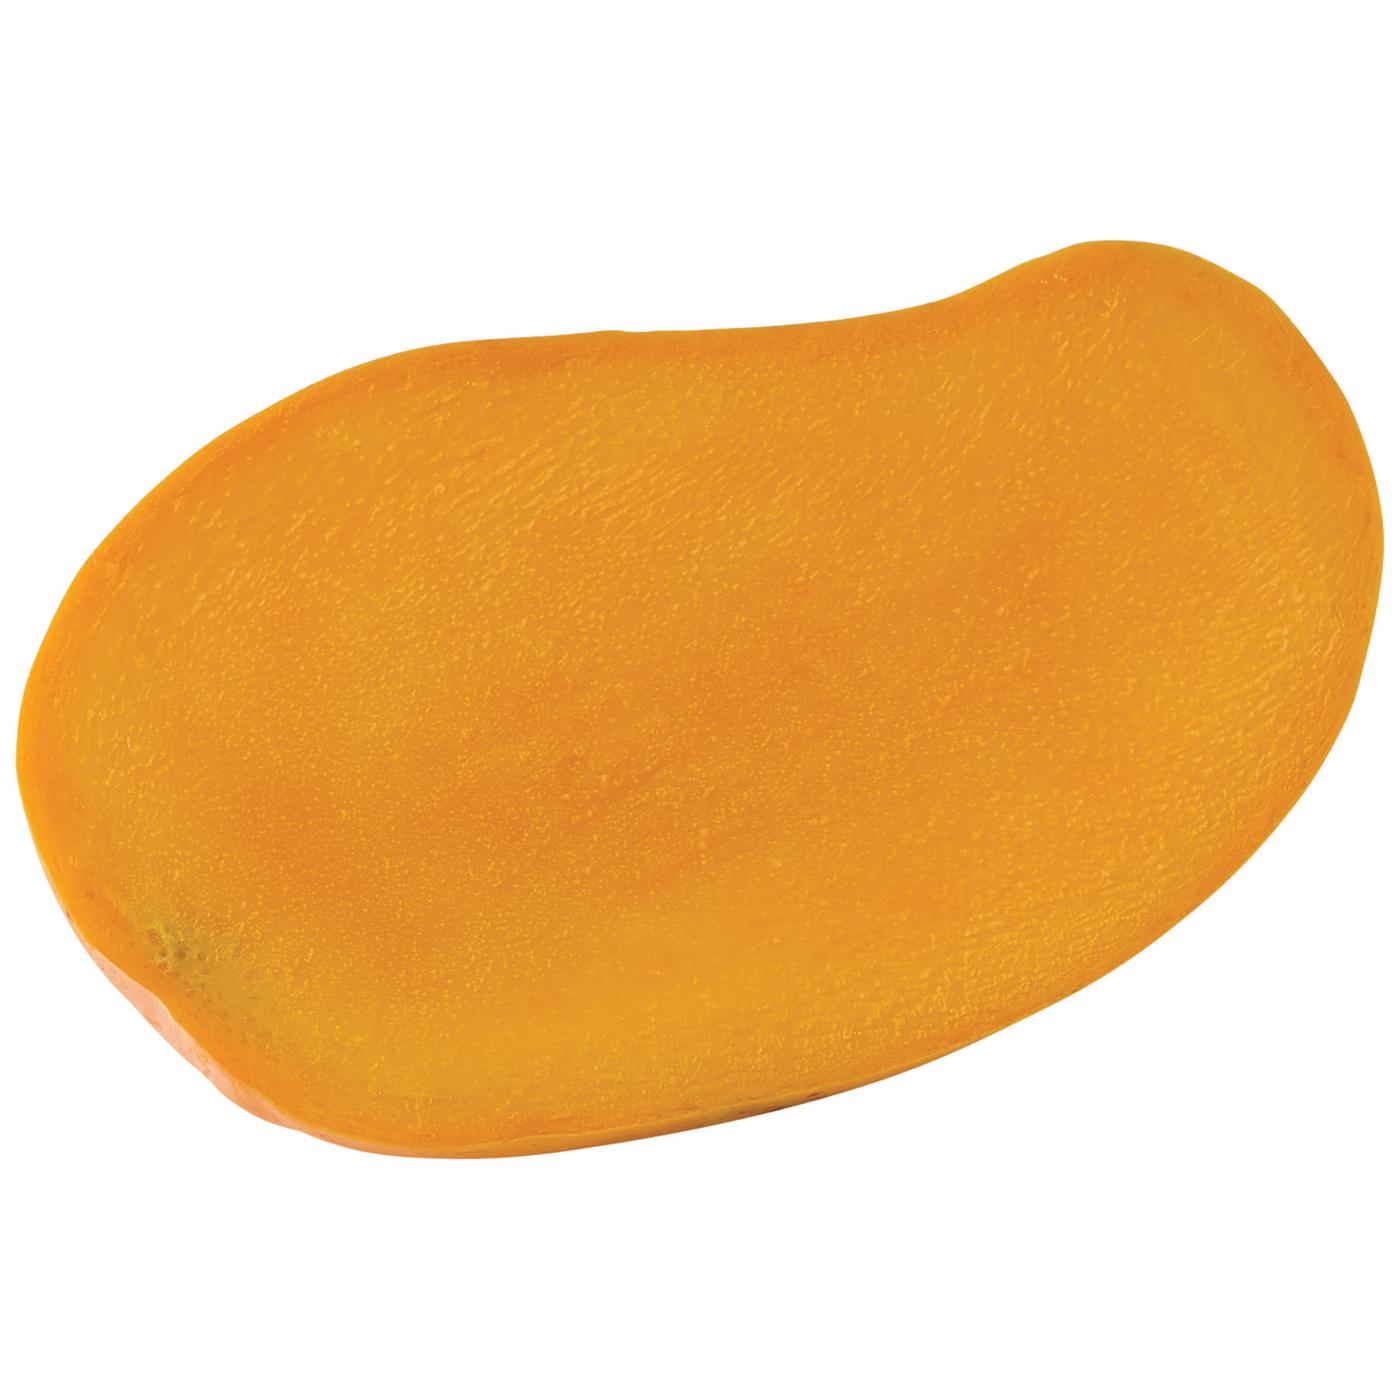 Fresh Large Ataulfo Mango; image 4 of 4